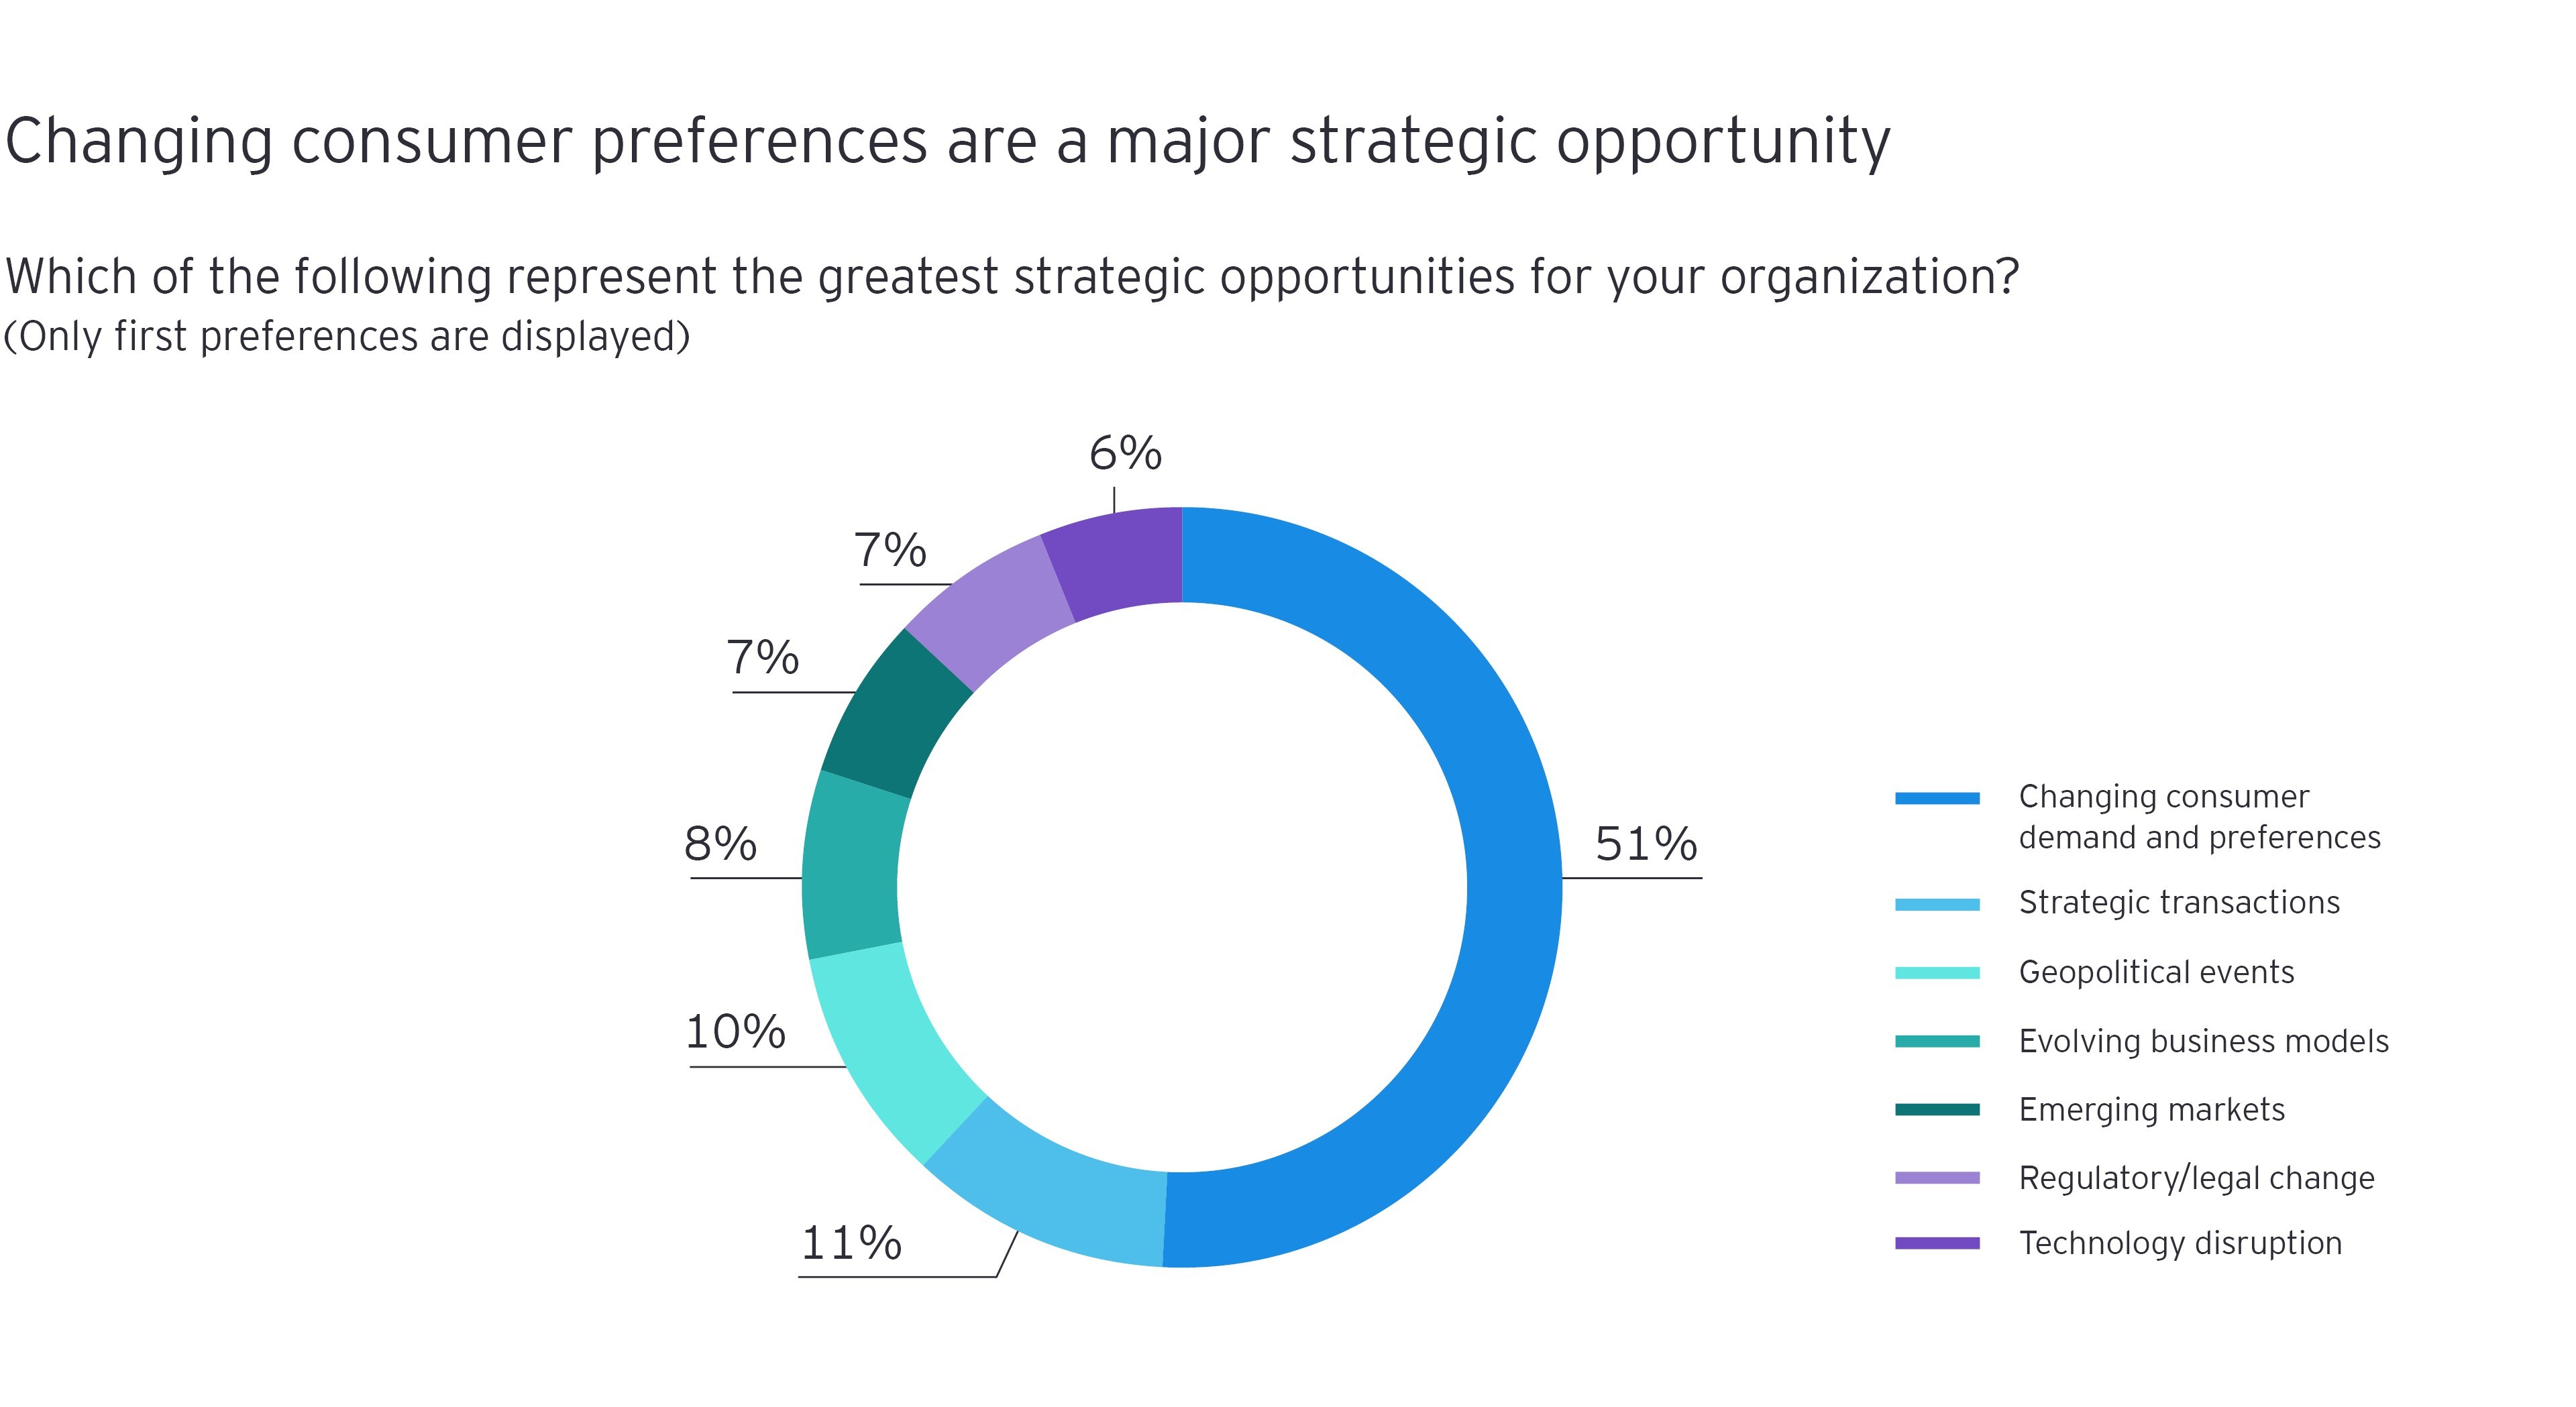 Gráfico que desglosa las respuestas generales de la encuesta por porcentaje a “¿Cuál de las siguientes opciones representa las mejores oportunidades estratégicas para su organización?"